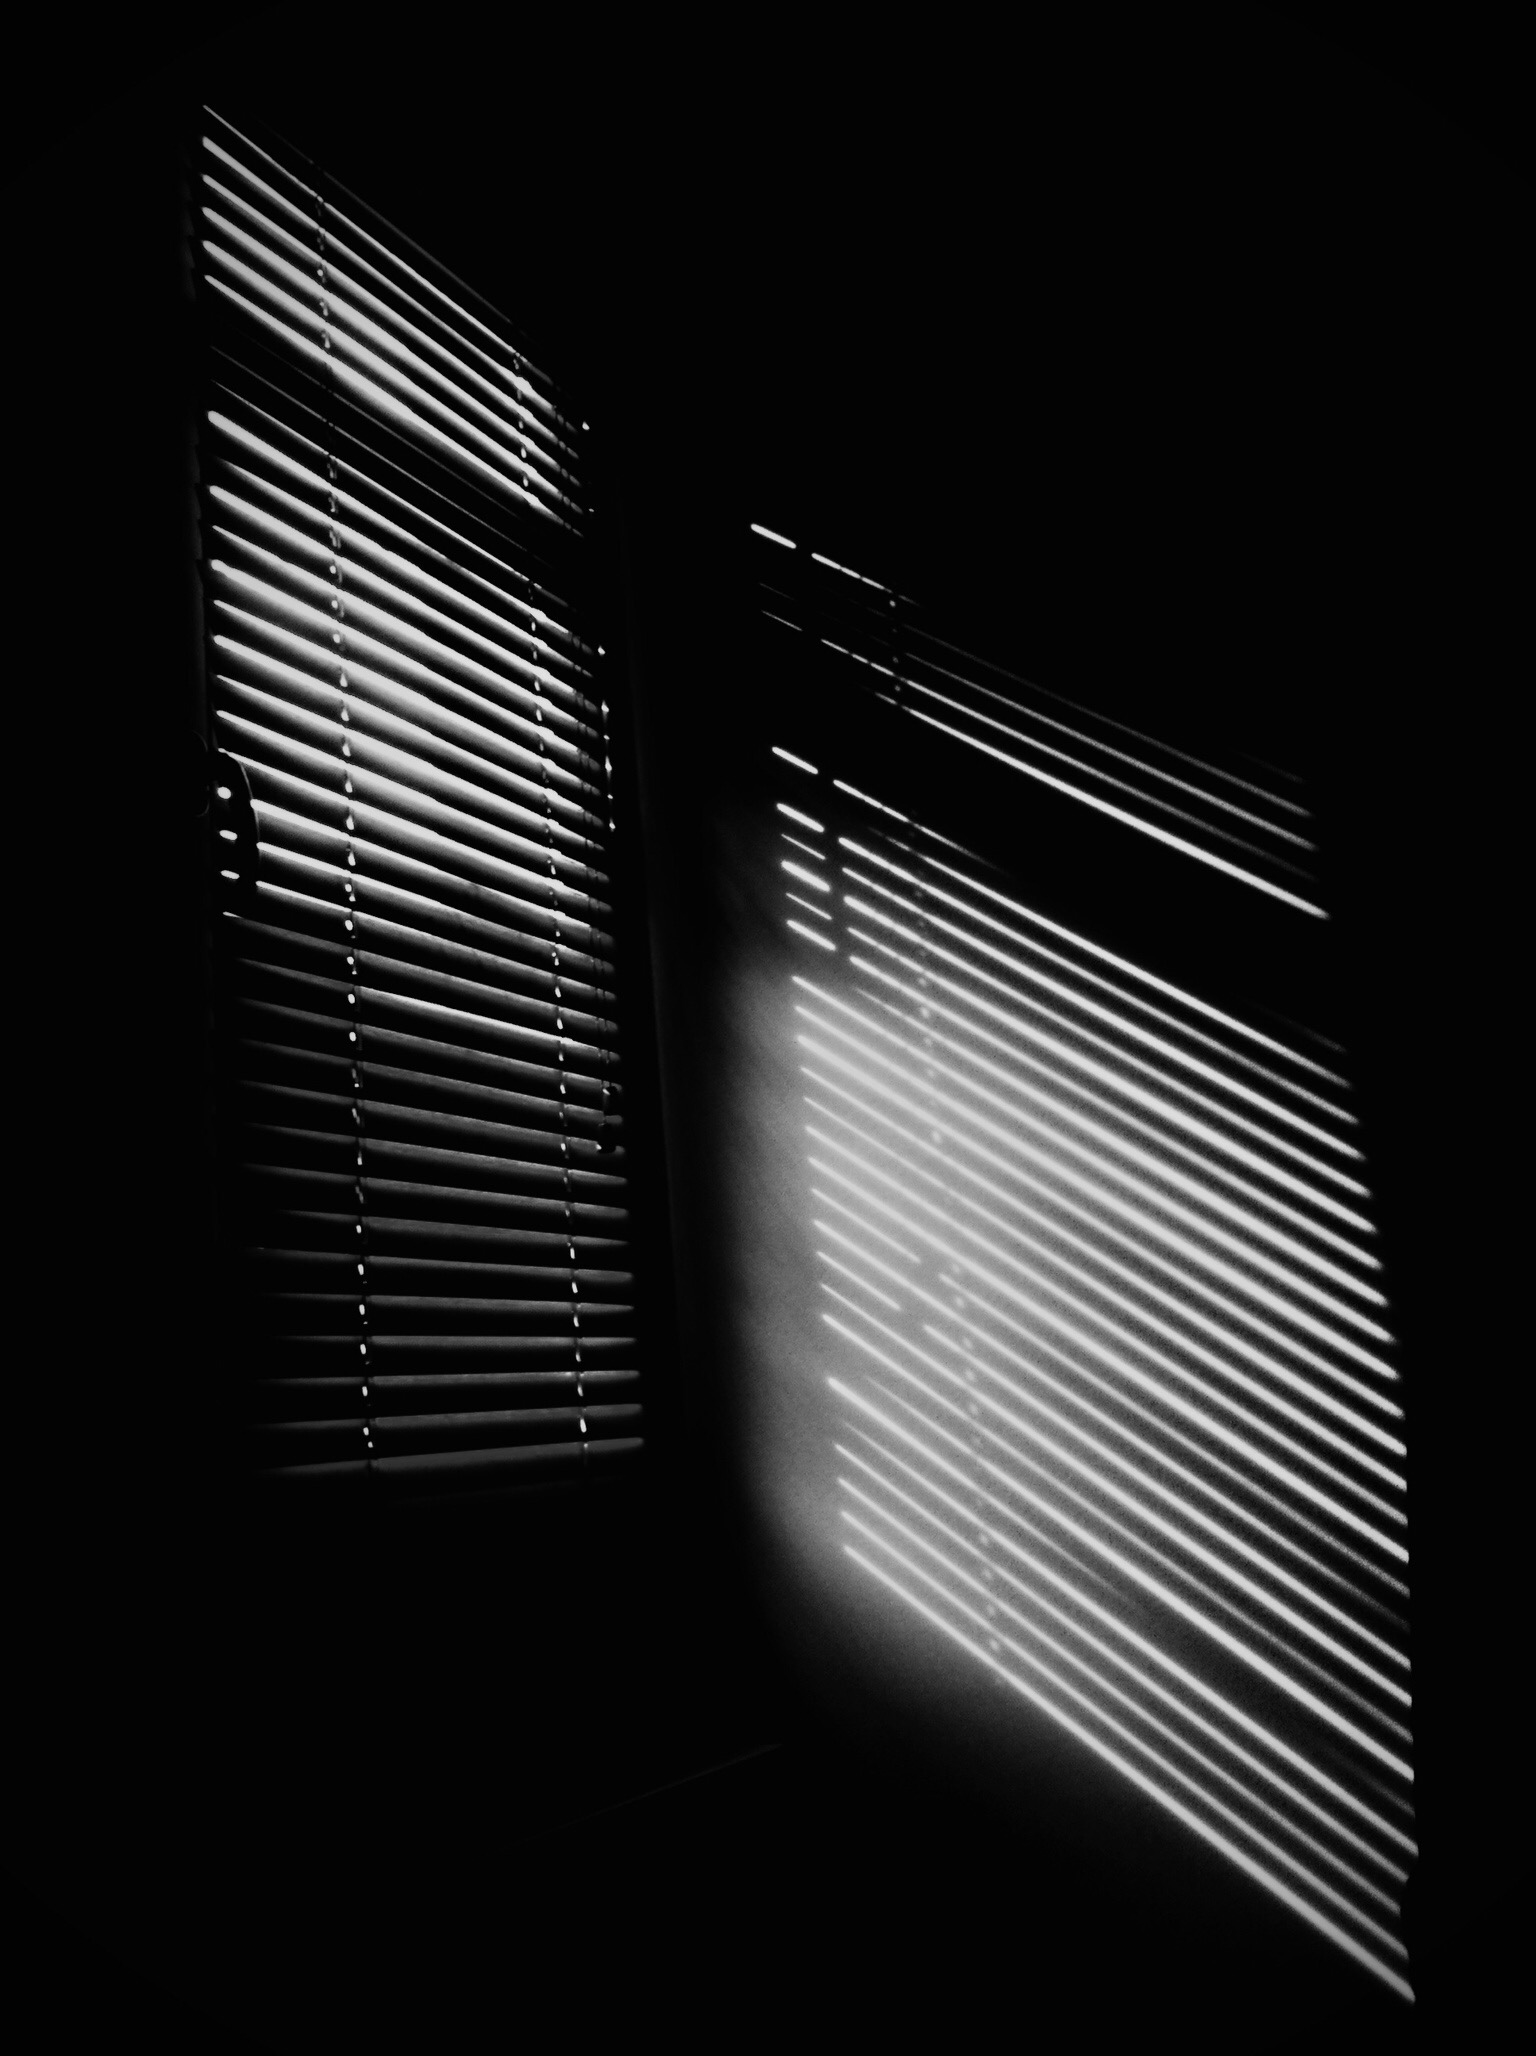 Fekete-fehér fénykép, amin egy ablak a falra vetülő árnyékai látszanak